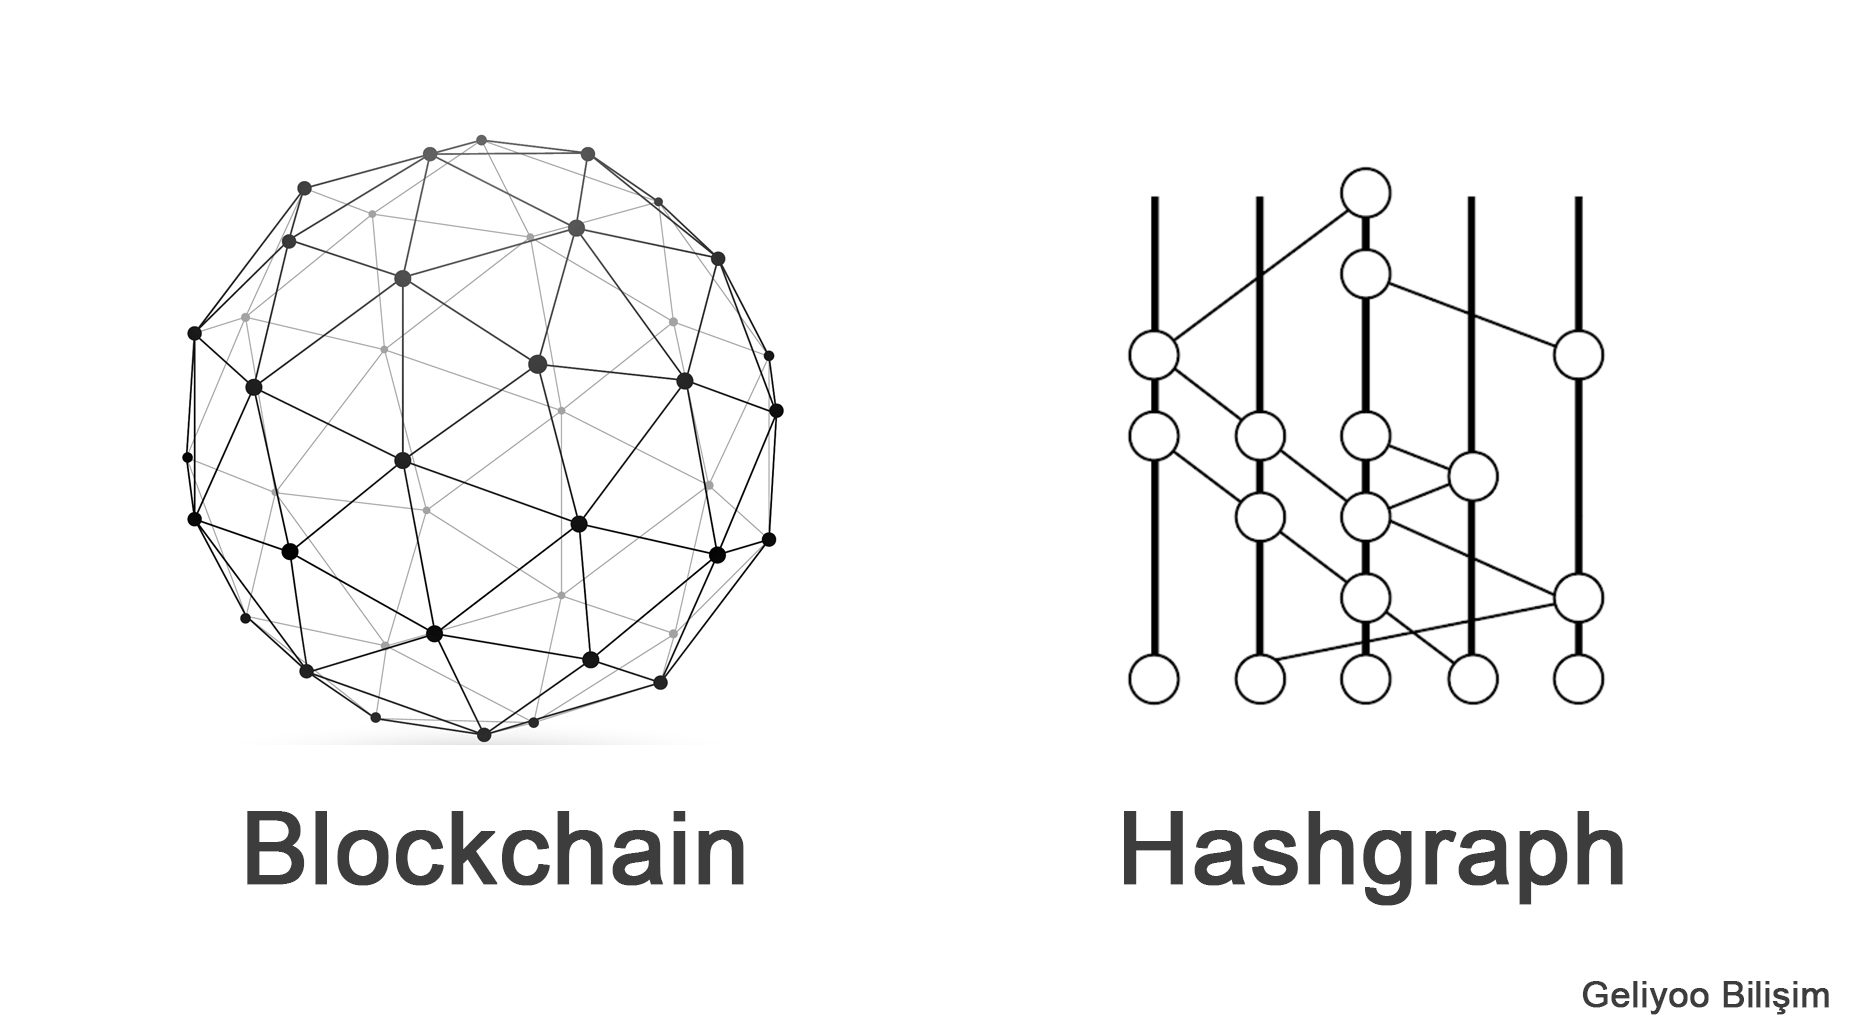 Hashgraph vs Blockchain